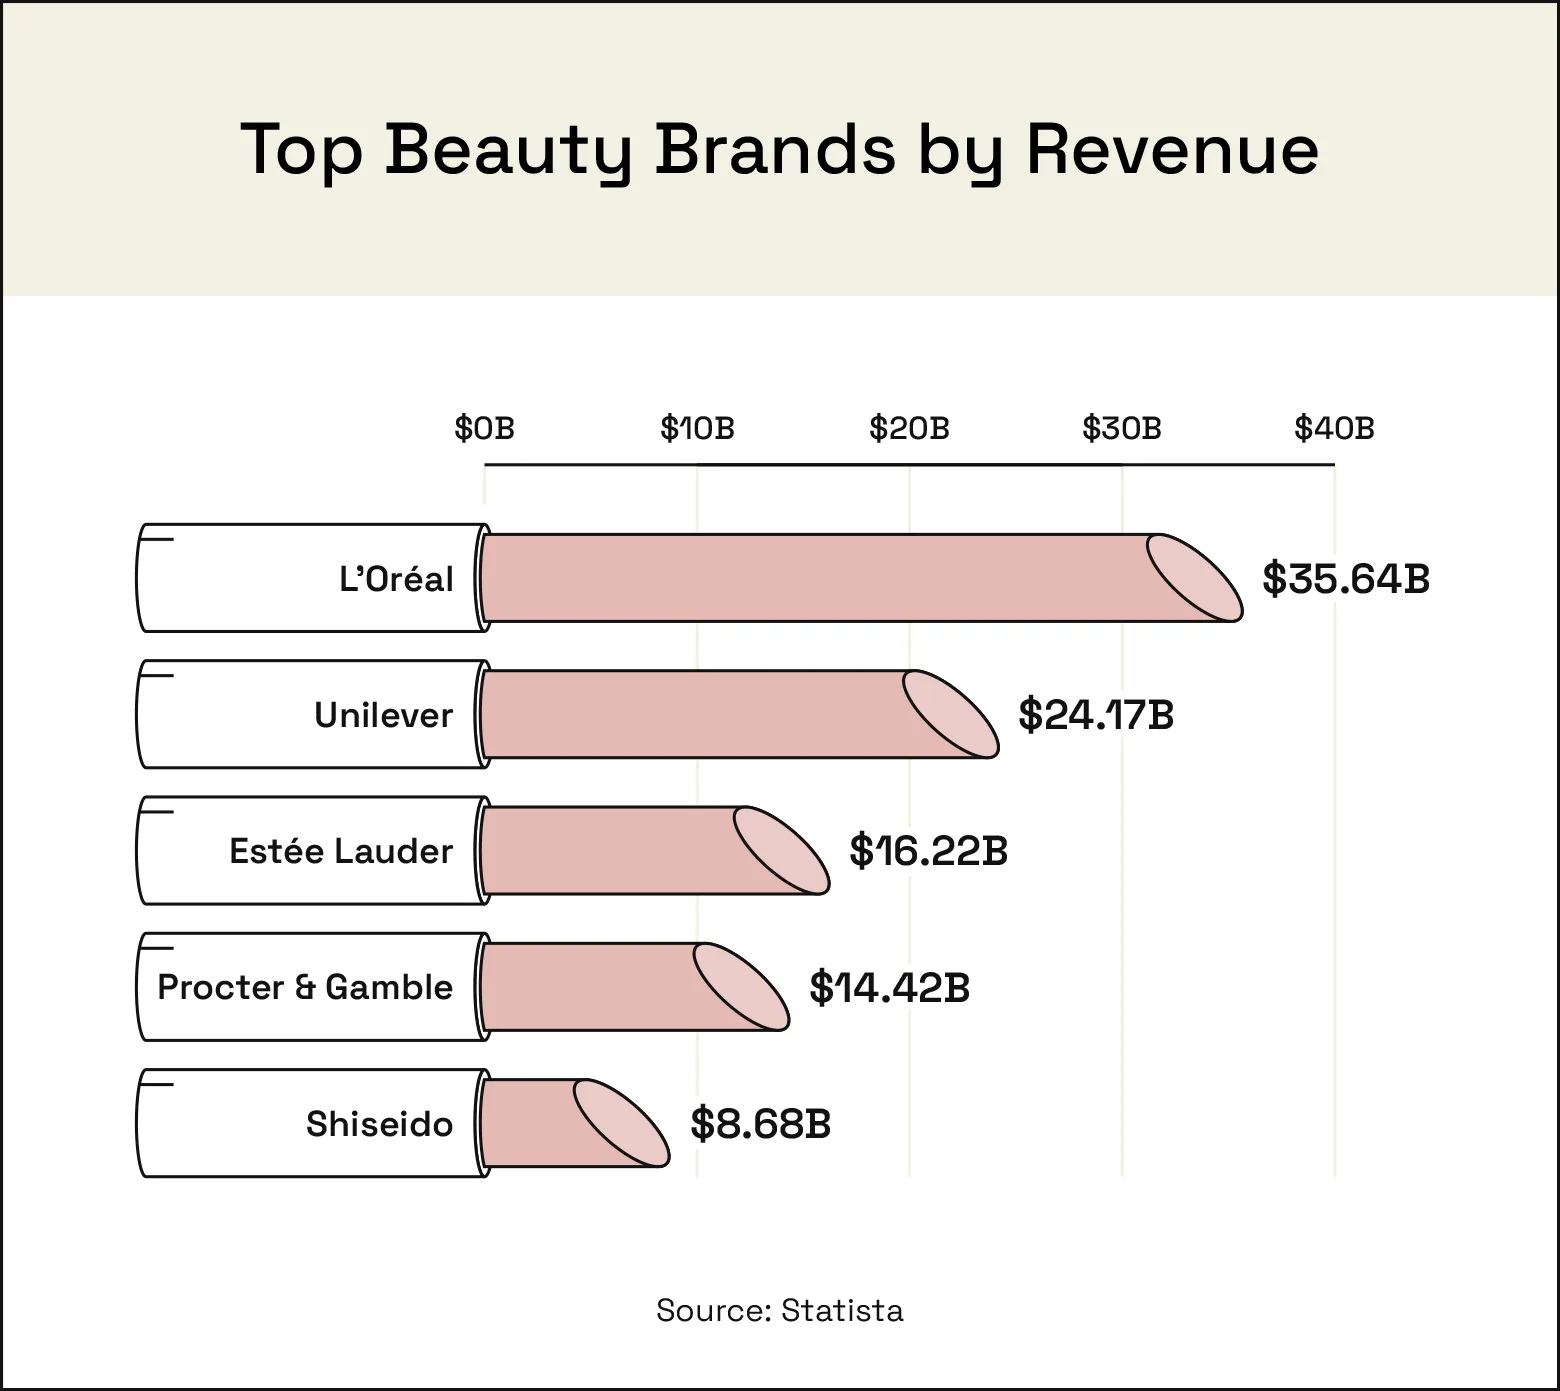 The top beauty brands by revenue are L’Oréal, Unilever, Estée Lauder, Procter & Gamble, and Shiseido.